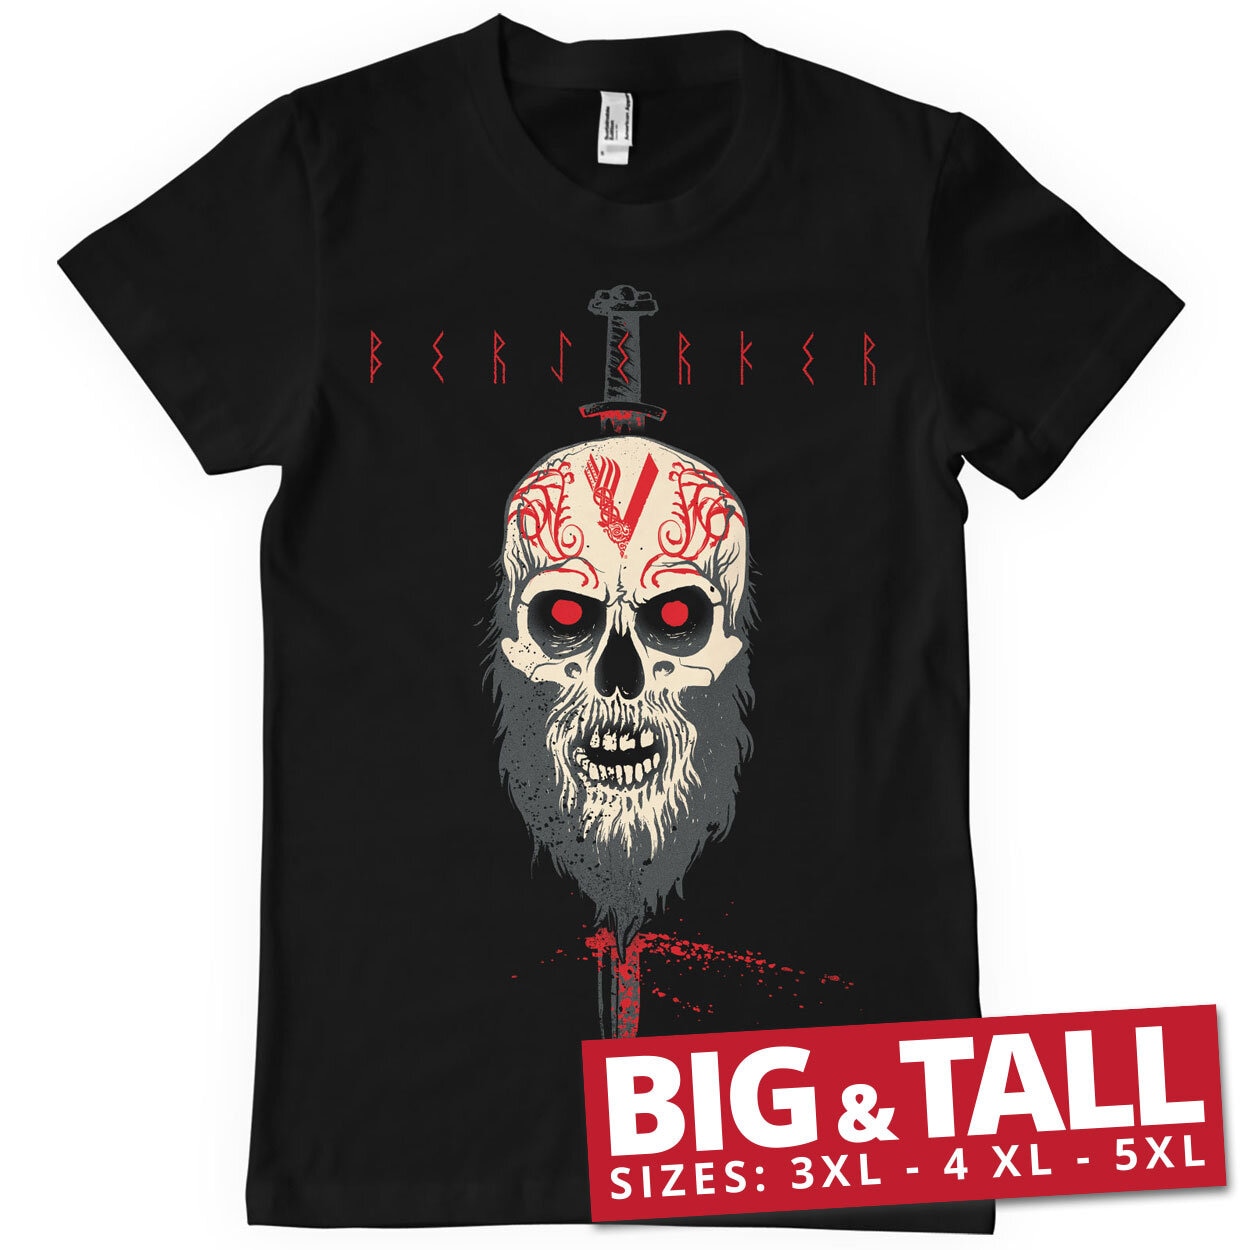 Vikings - Berserker Big & Tall T-Shirt